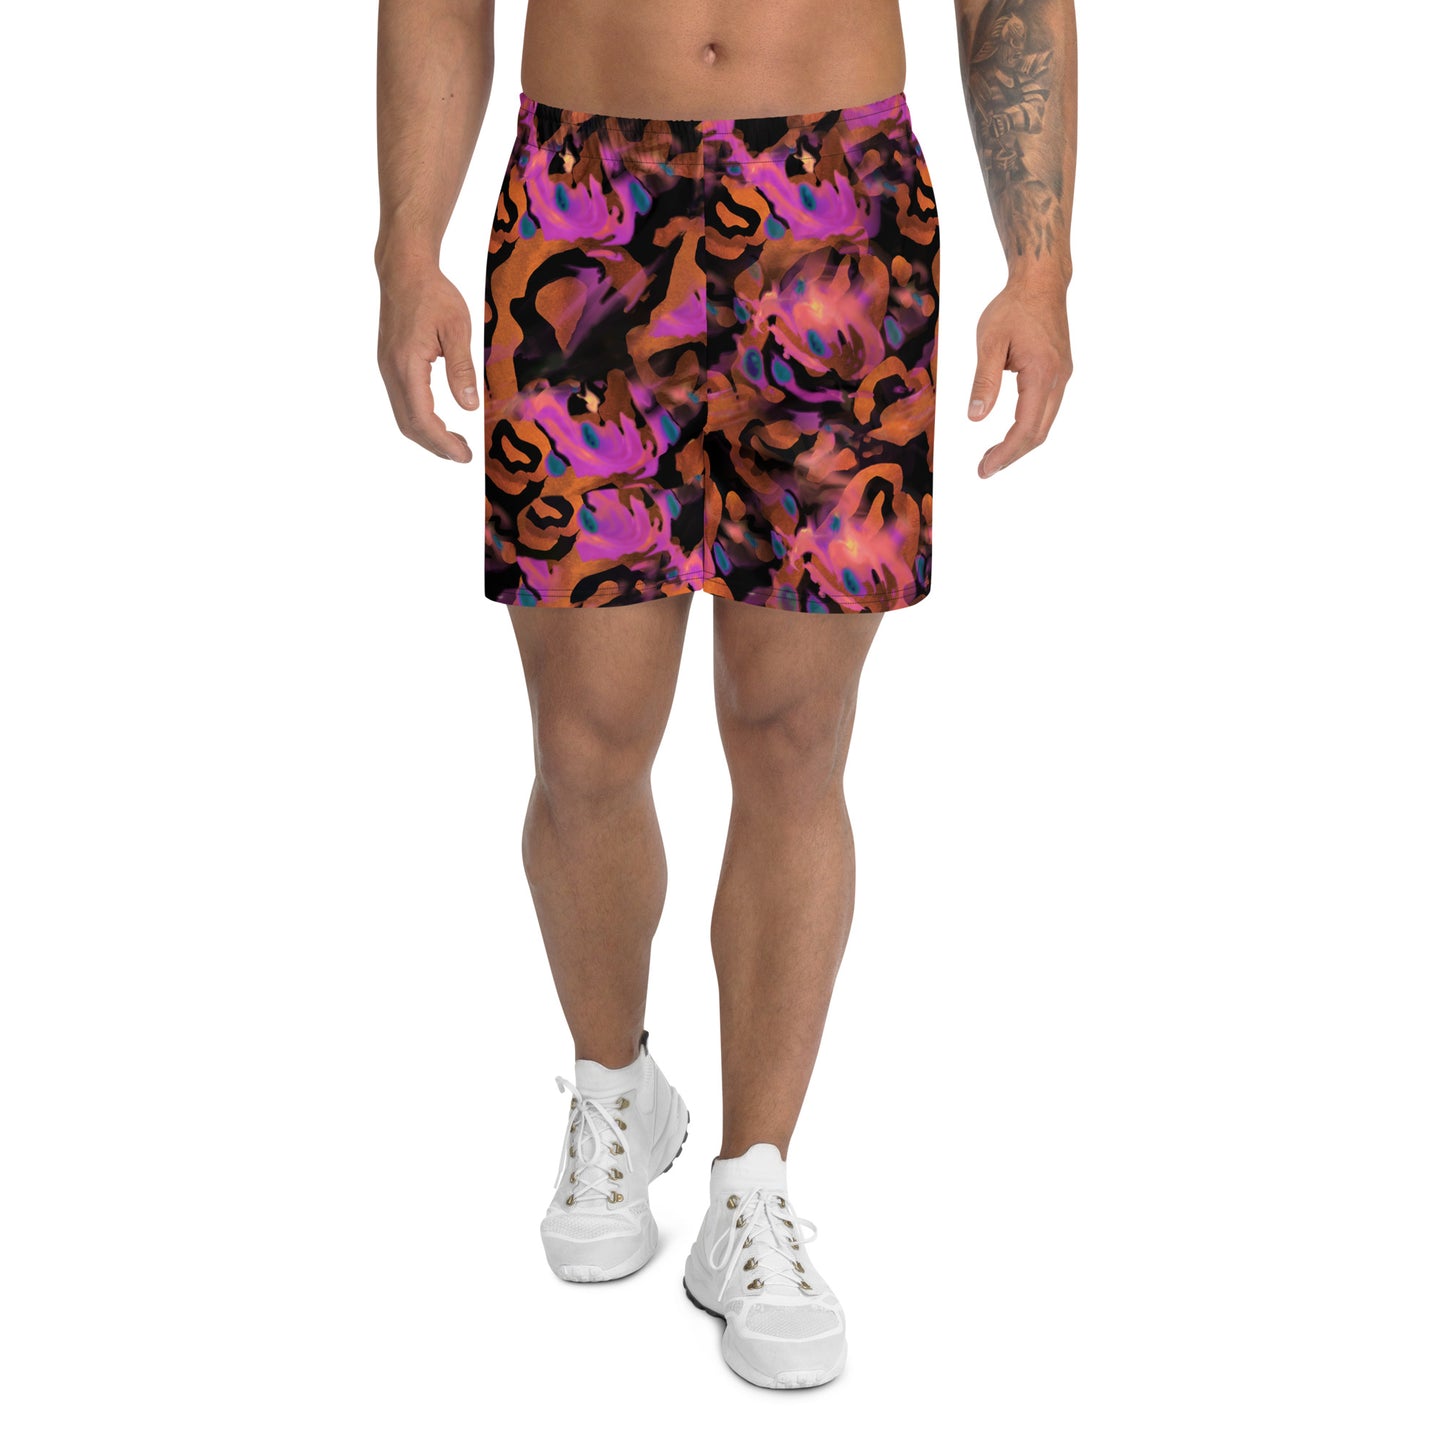 Men's Athletic Shorts - Watermelon Flavor